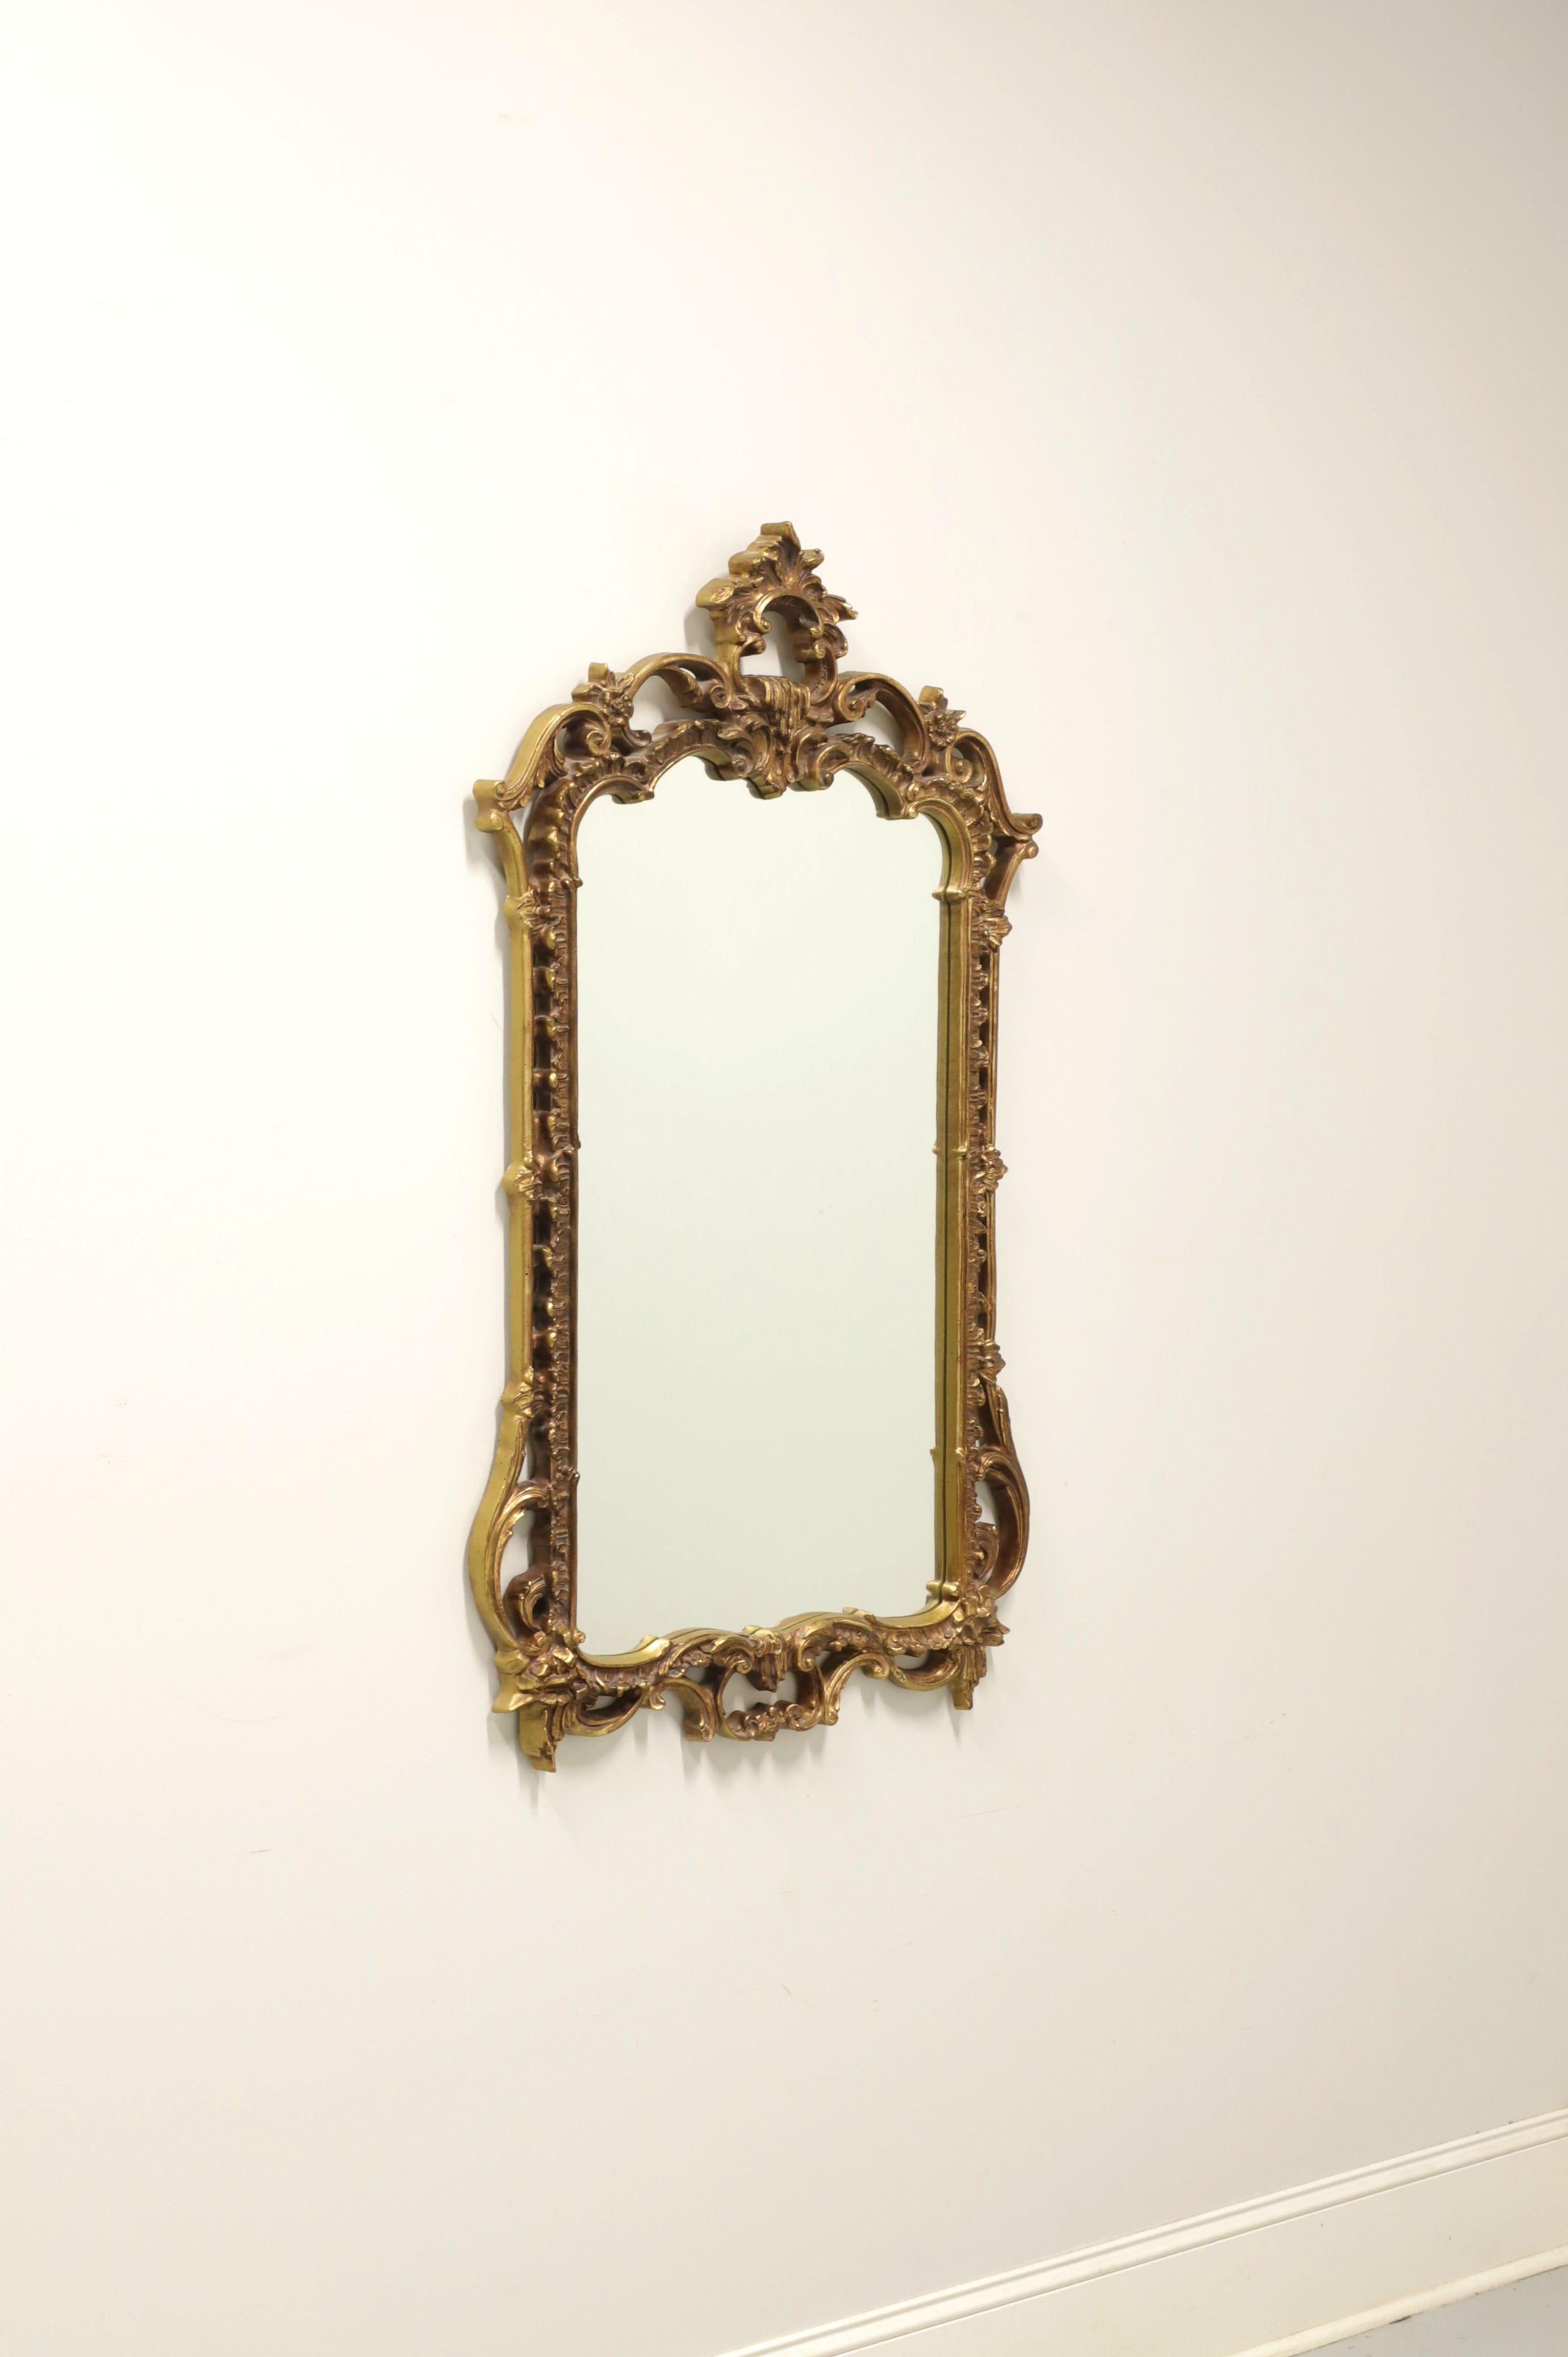 Ein Wandspiegel im Rokoko-Stil von Carolina Mirror. Spiegelglas in einem aufwändig geformten, vergoldeten und bemalten Verbundrahmen mit Blättern in der oberen Mitte und floralen Akzenten im gesamten Rahmen. Hergestellt in North Carolina, USA, im